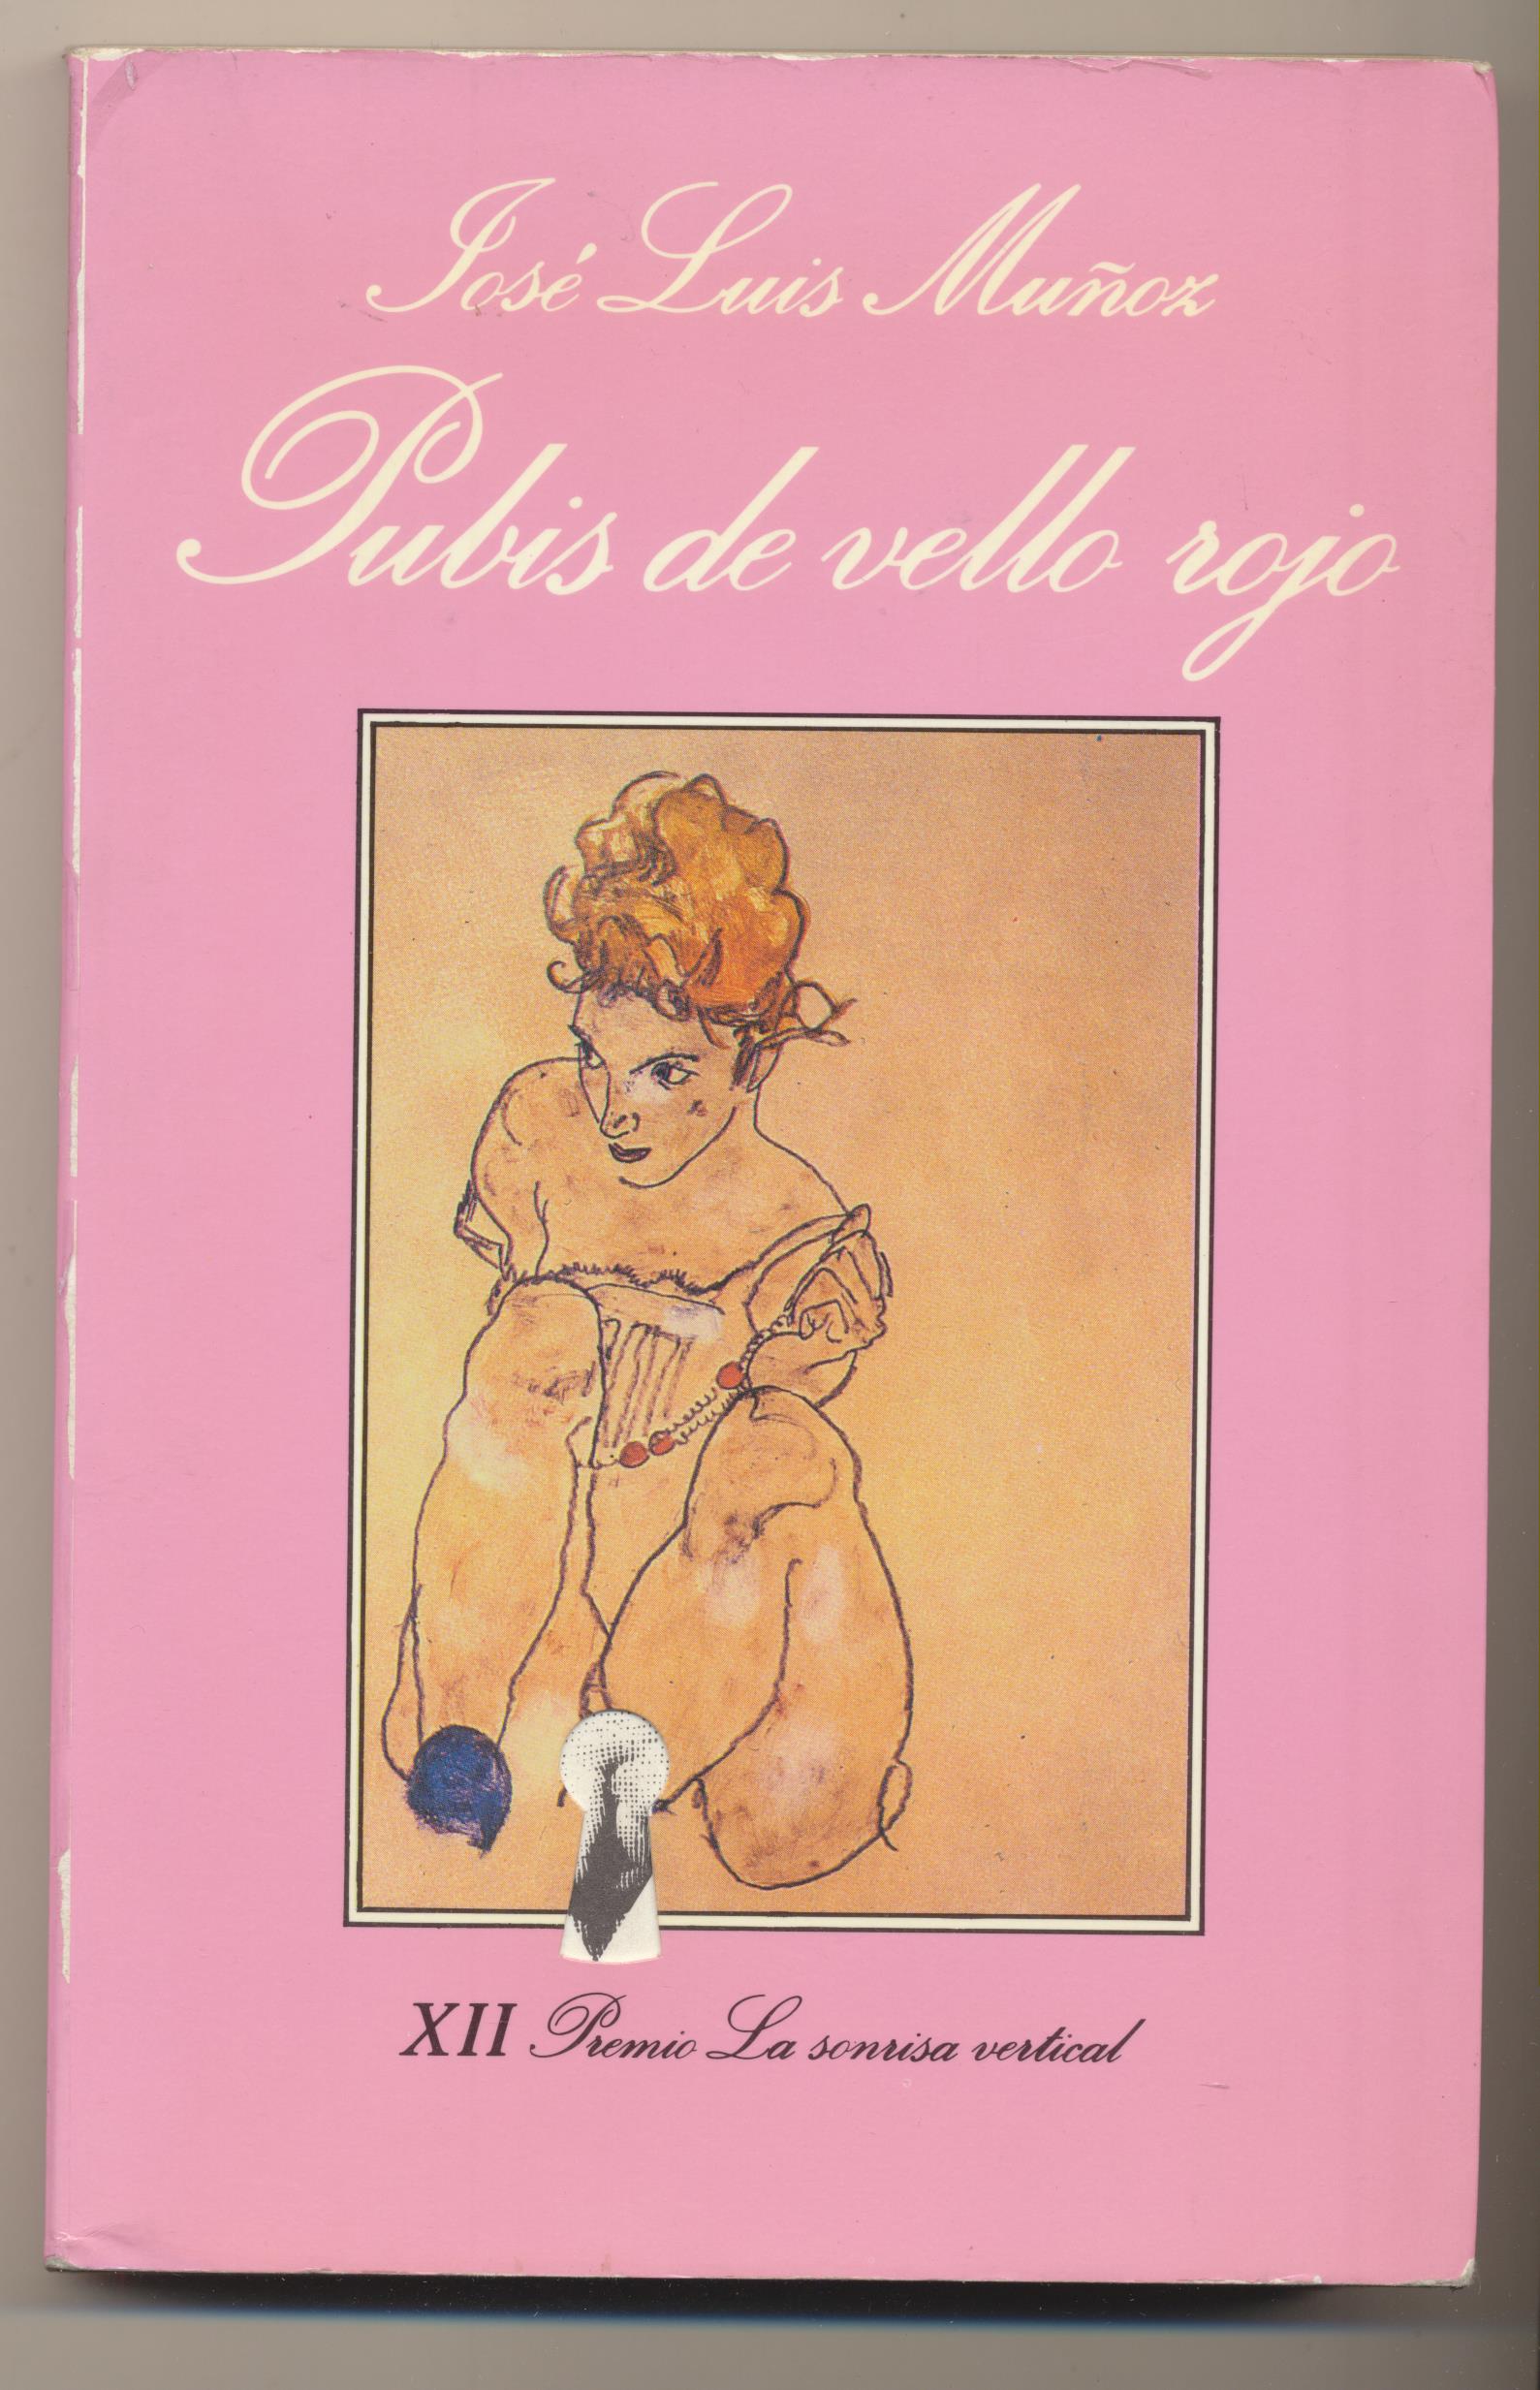 José Luis Muñoz. Pubis de pelo rojo. 1ª Edición Tusquets editores 1990